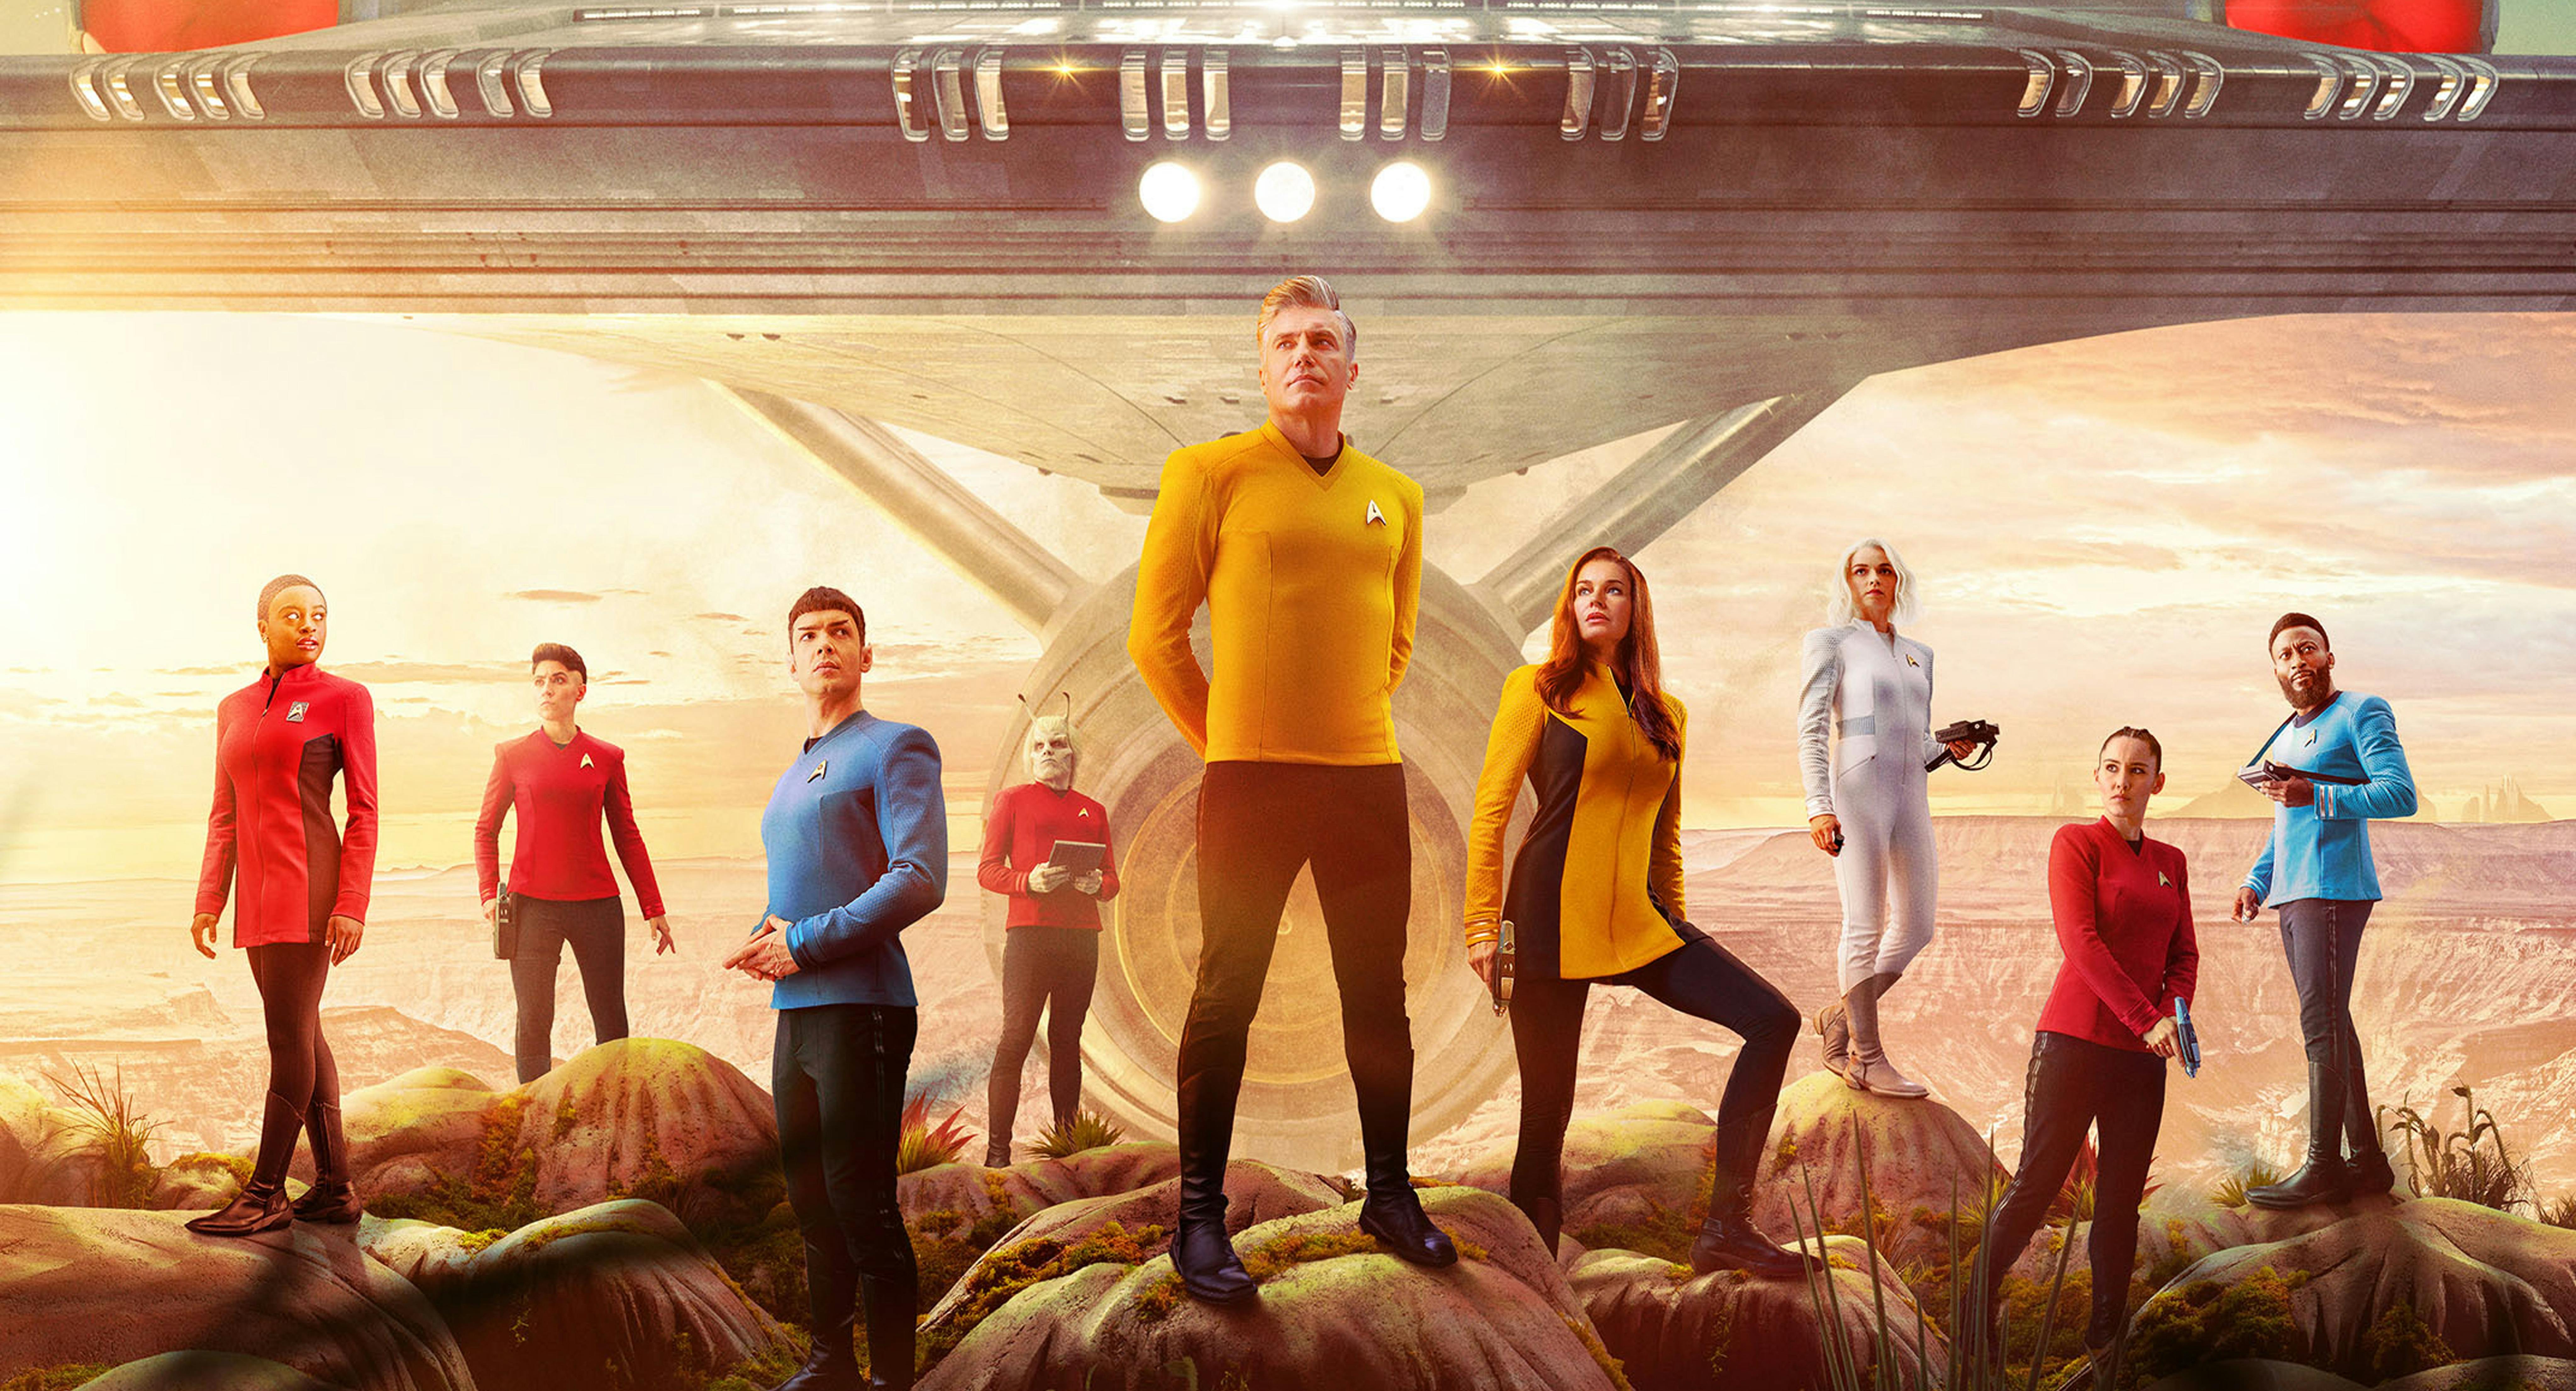 Promotional key art poster for Star Trek: Strange New Worlds